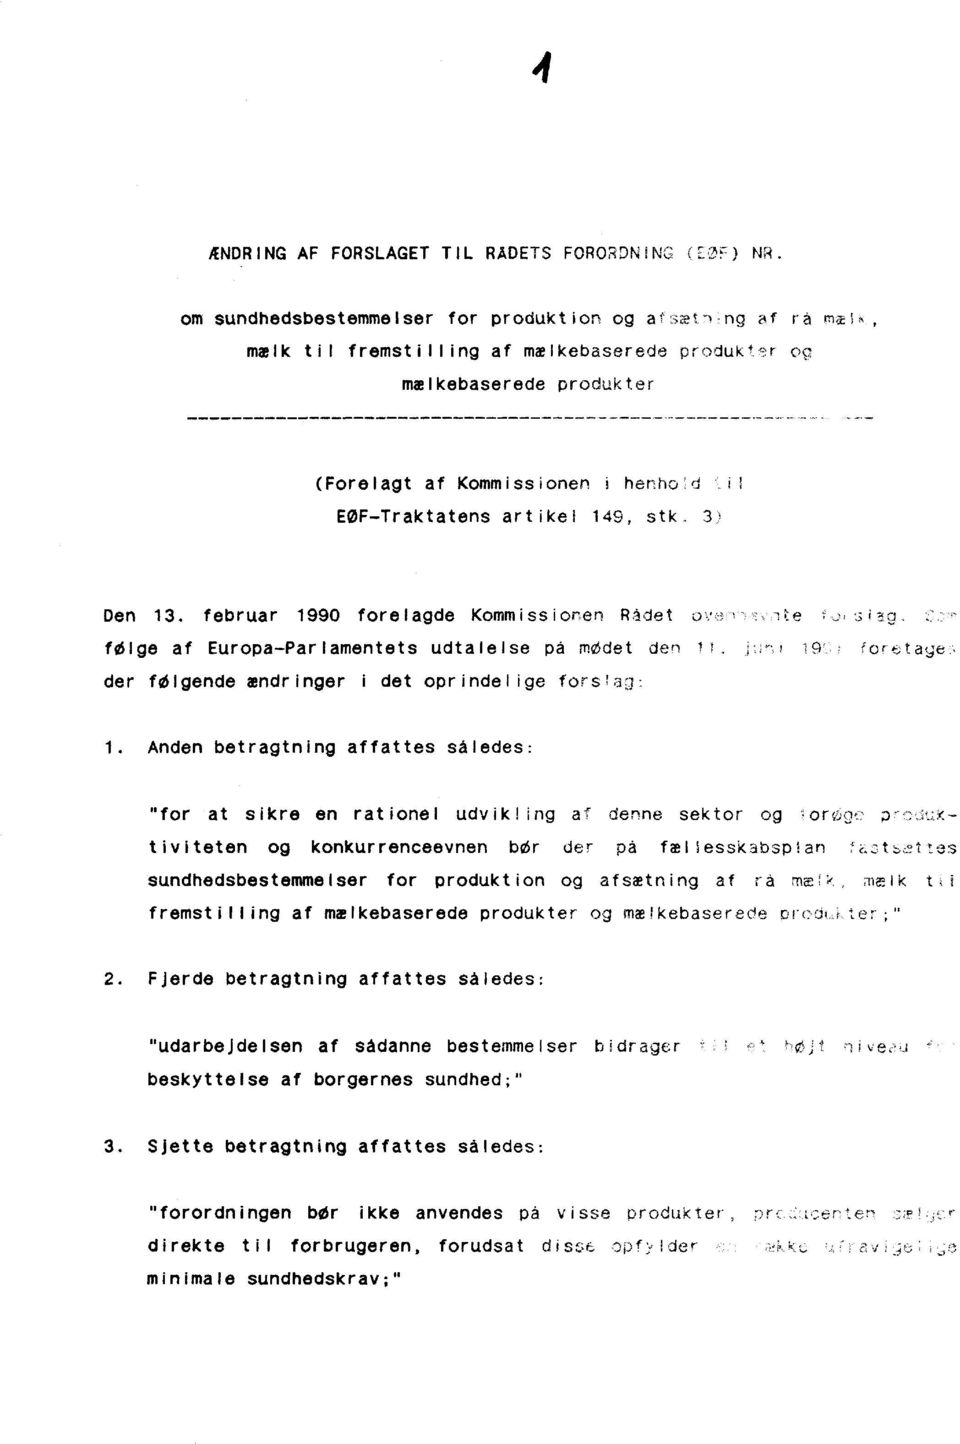 149, stk. 3) Den 13. februar 1990 forelagde Kommissionen Rådet ove n^ite -o ylag C.:^ følge af Europa-Parlamentets udtalelse på mødet den 11. jwn i 19?